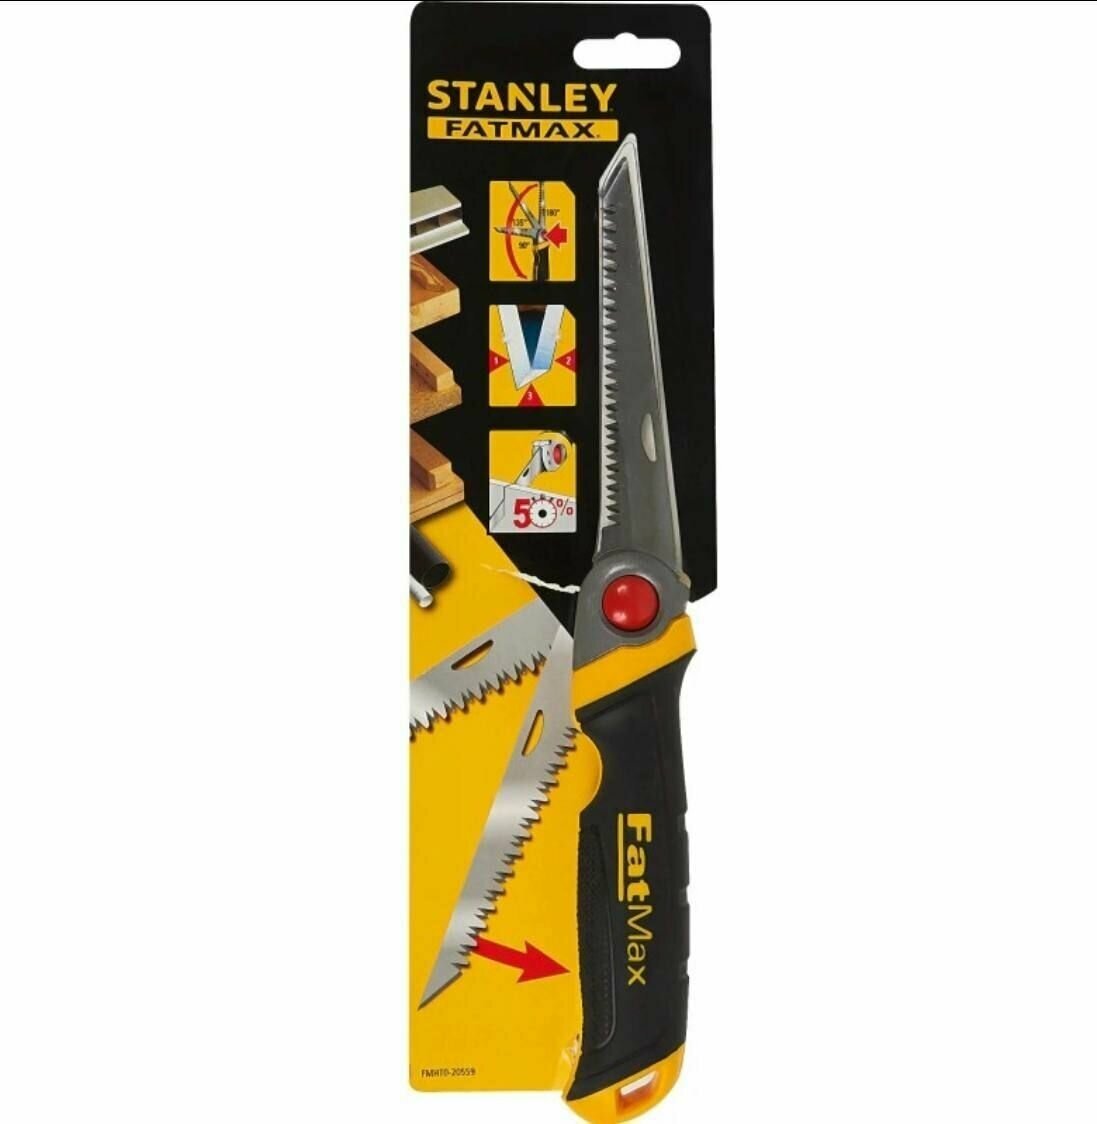 Ножовка складная STANLEY FatMax FMHT0-20559 по дереву/гипсокартону/пластику. 3D зубья. Фиксация 90, 135 и 180